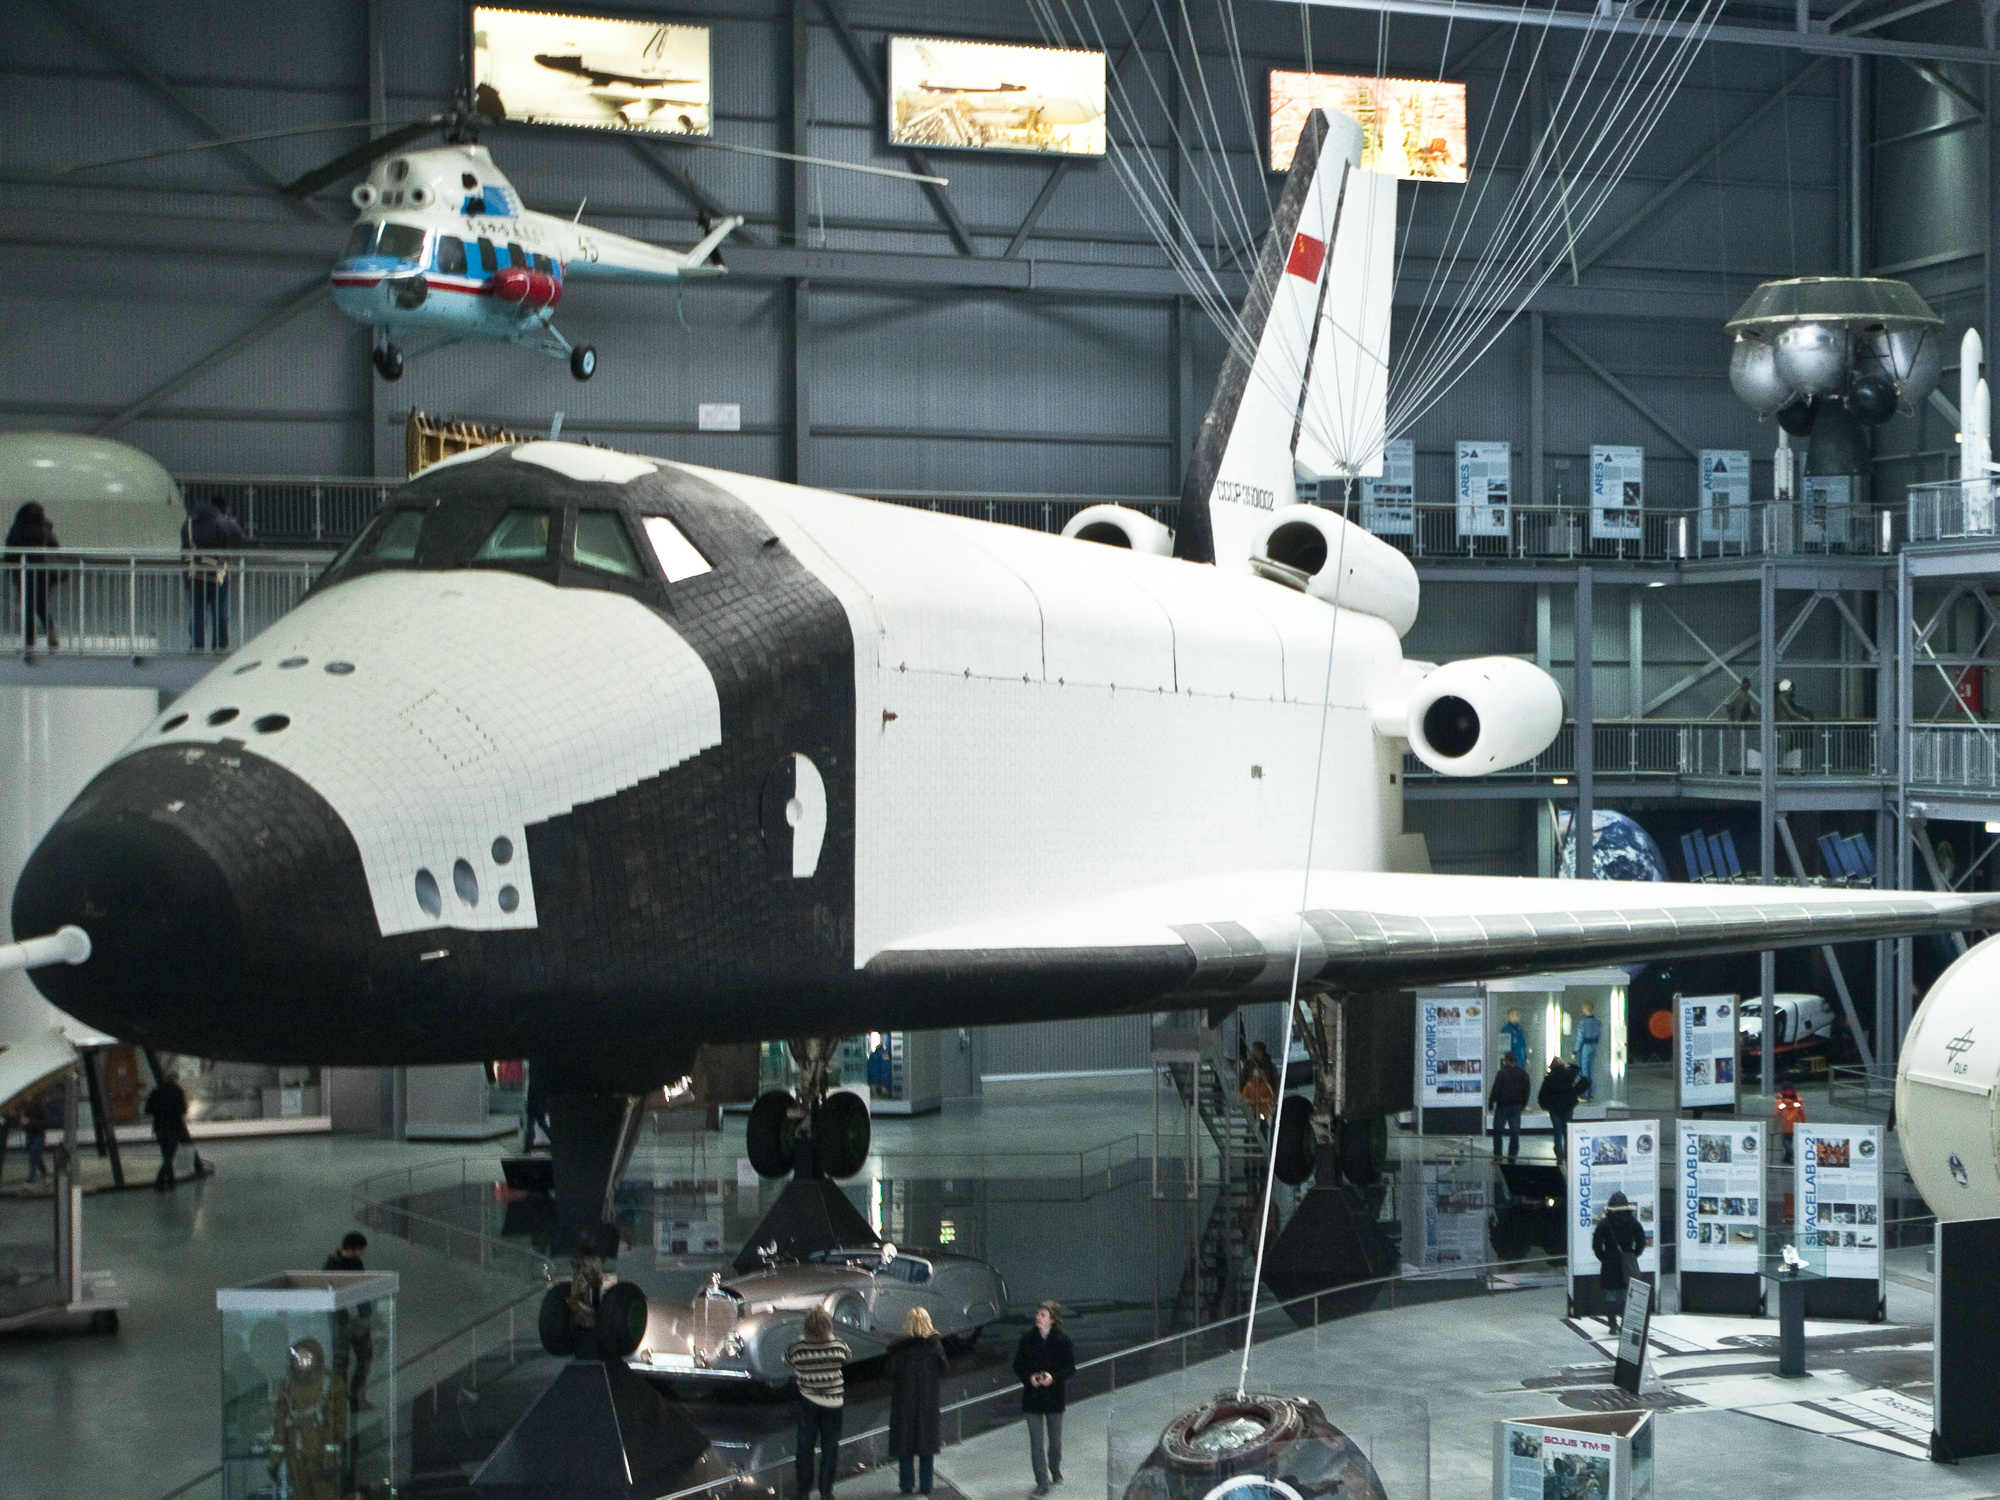 博物館展出的蘇聯暴風雪號太空梭